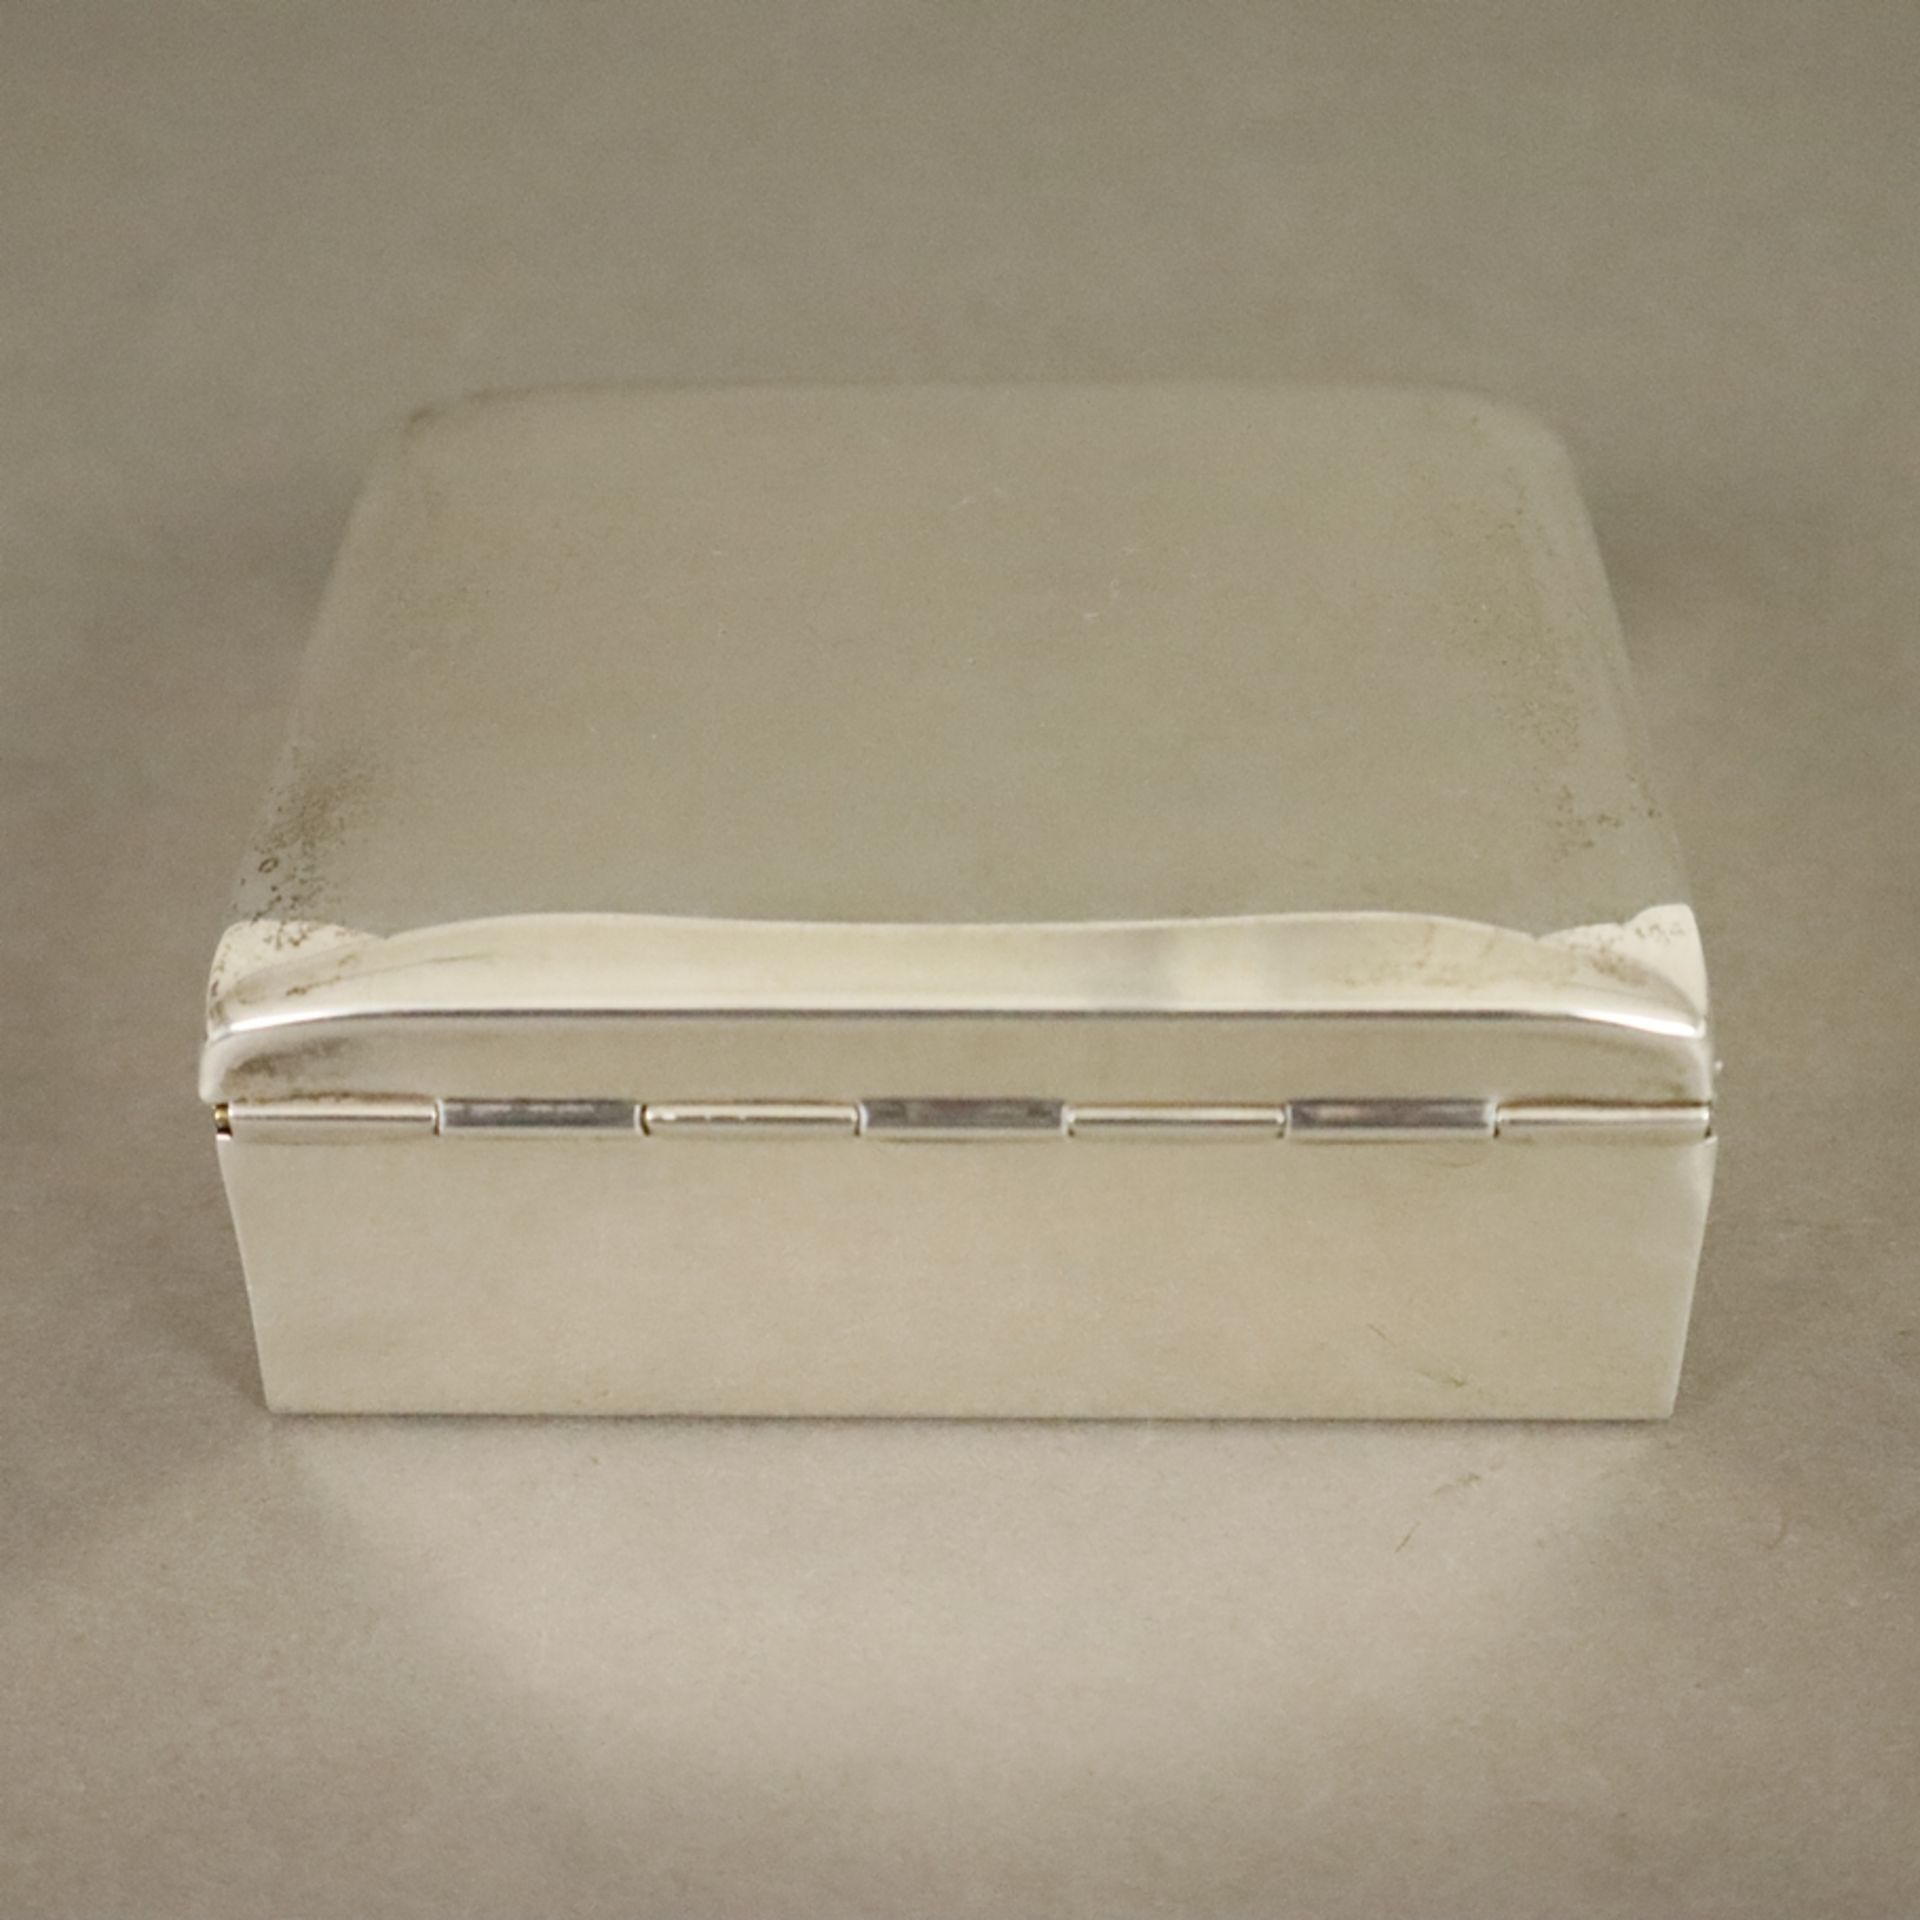 Zigarettendose - Poole USA, 925er Sterling Silber, schlichte rechteckige Form, leicht gewölbter Sch - Bild 4 aus 5